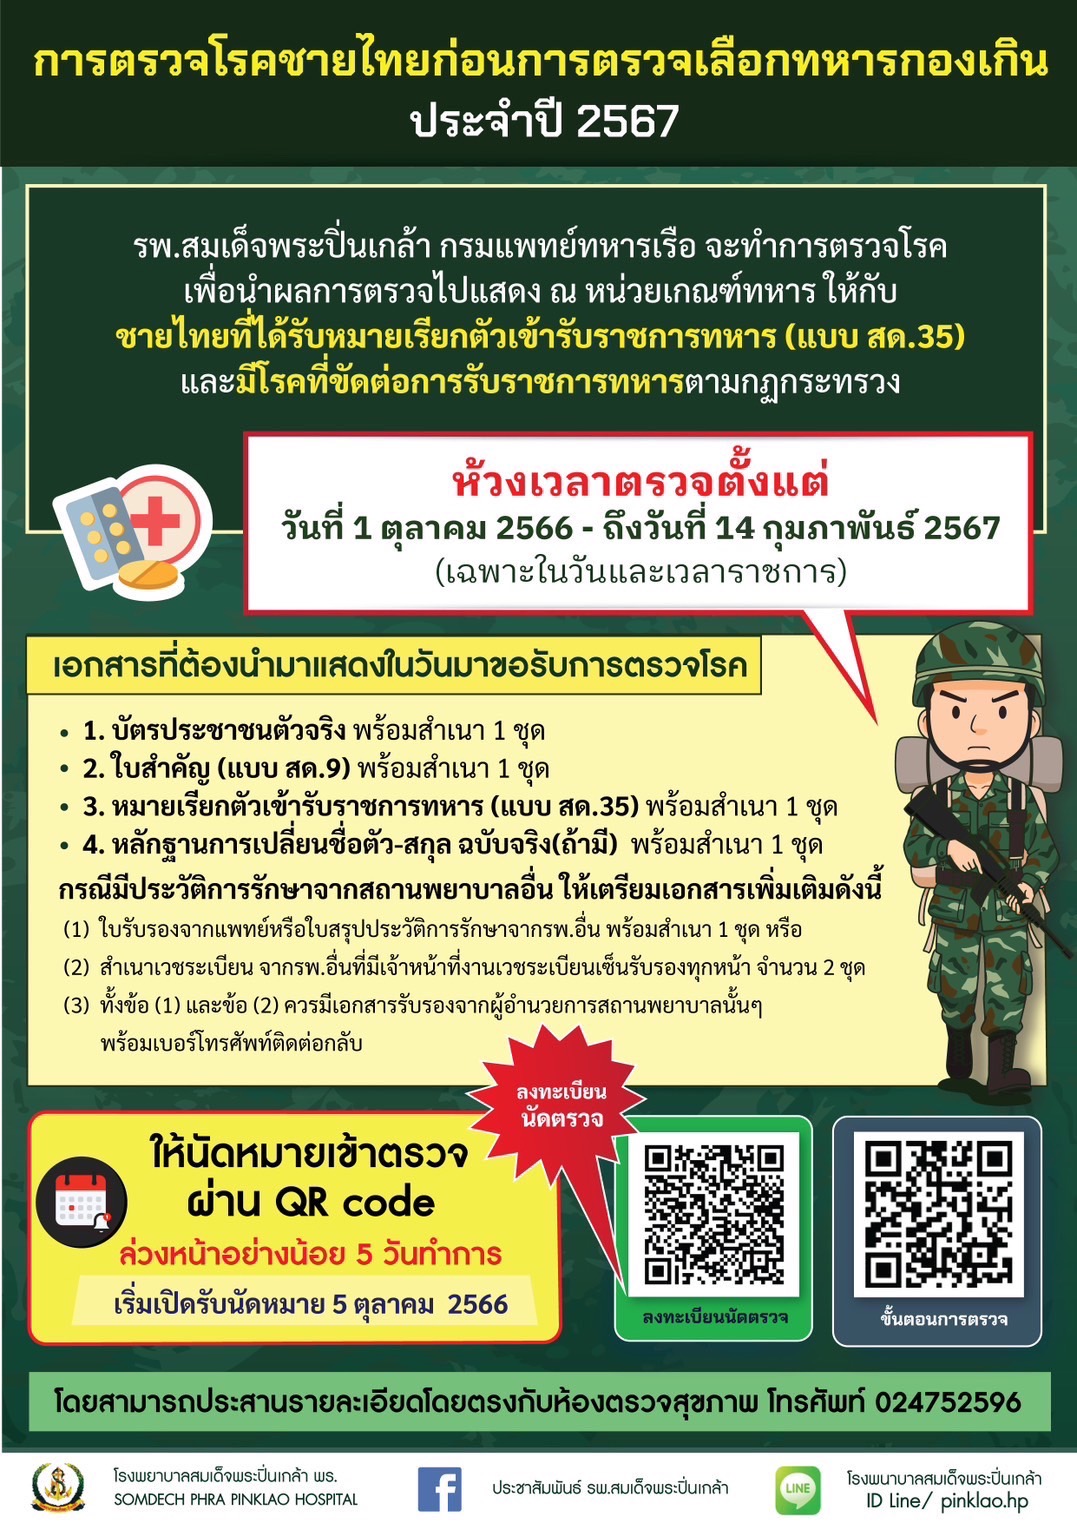 การตรวจโรคชายไทยก่อนการตรวจเลือกทหารกองเกิน ประจำปี 2567